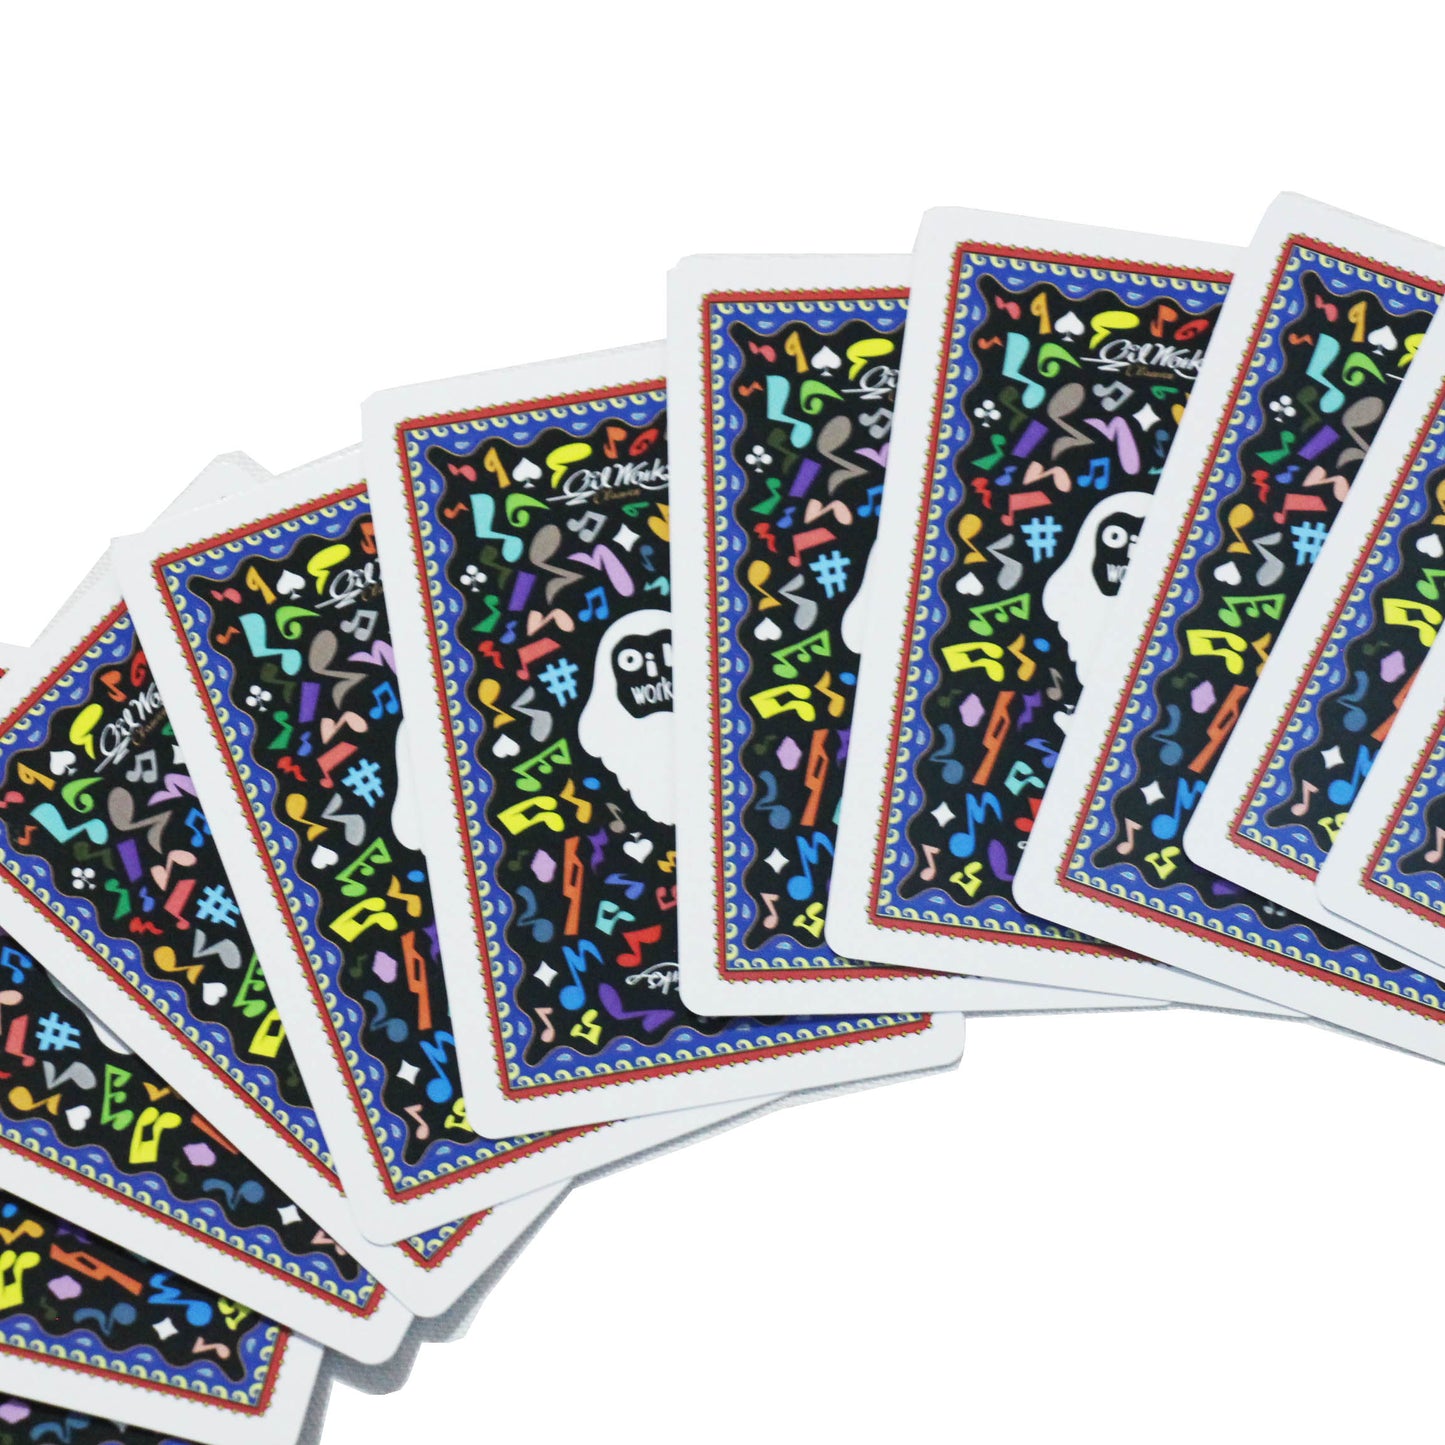 PopyOil / OILWORKS 20th Playing Card